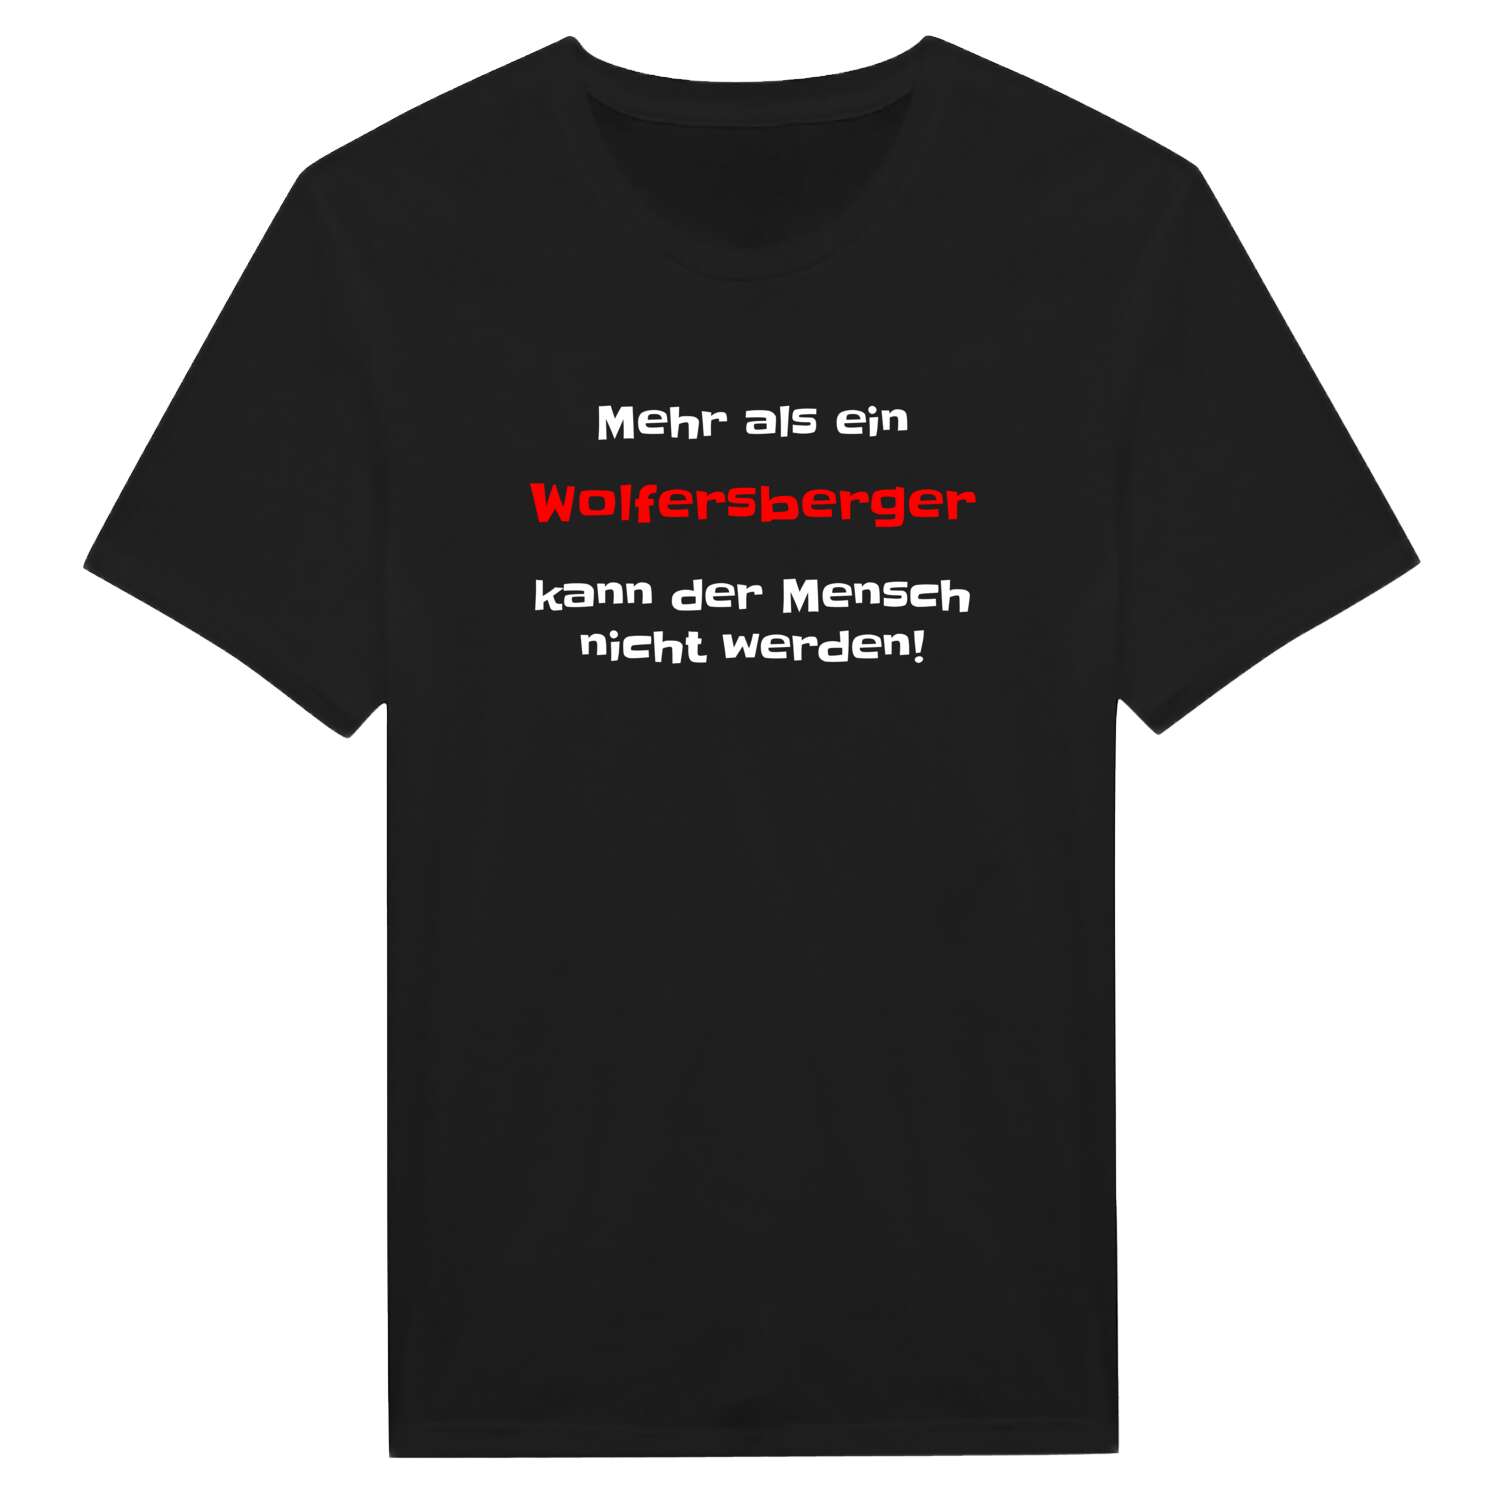 Wolfersberg T-Shirt »Mehr als ein«